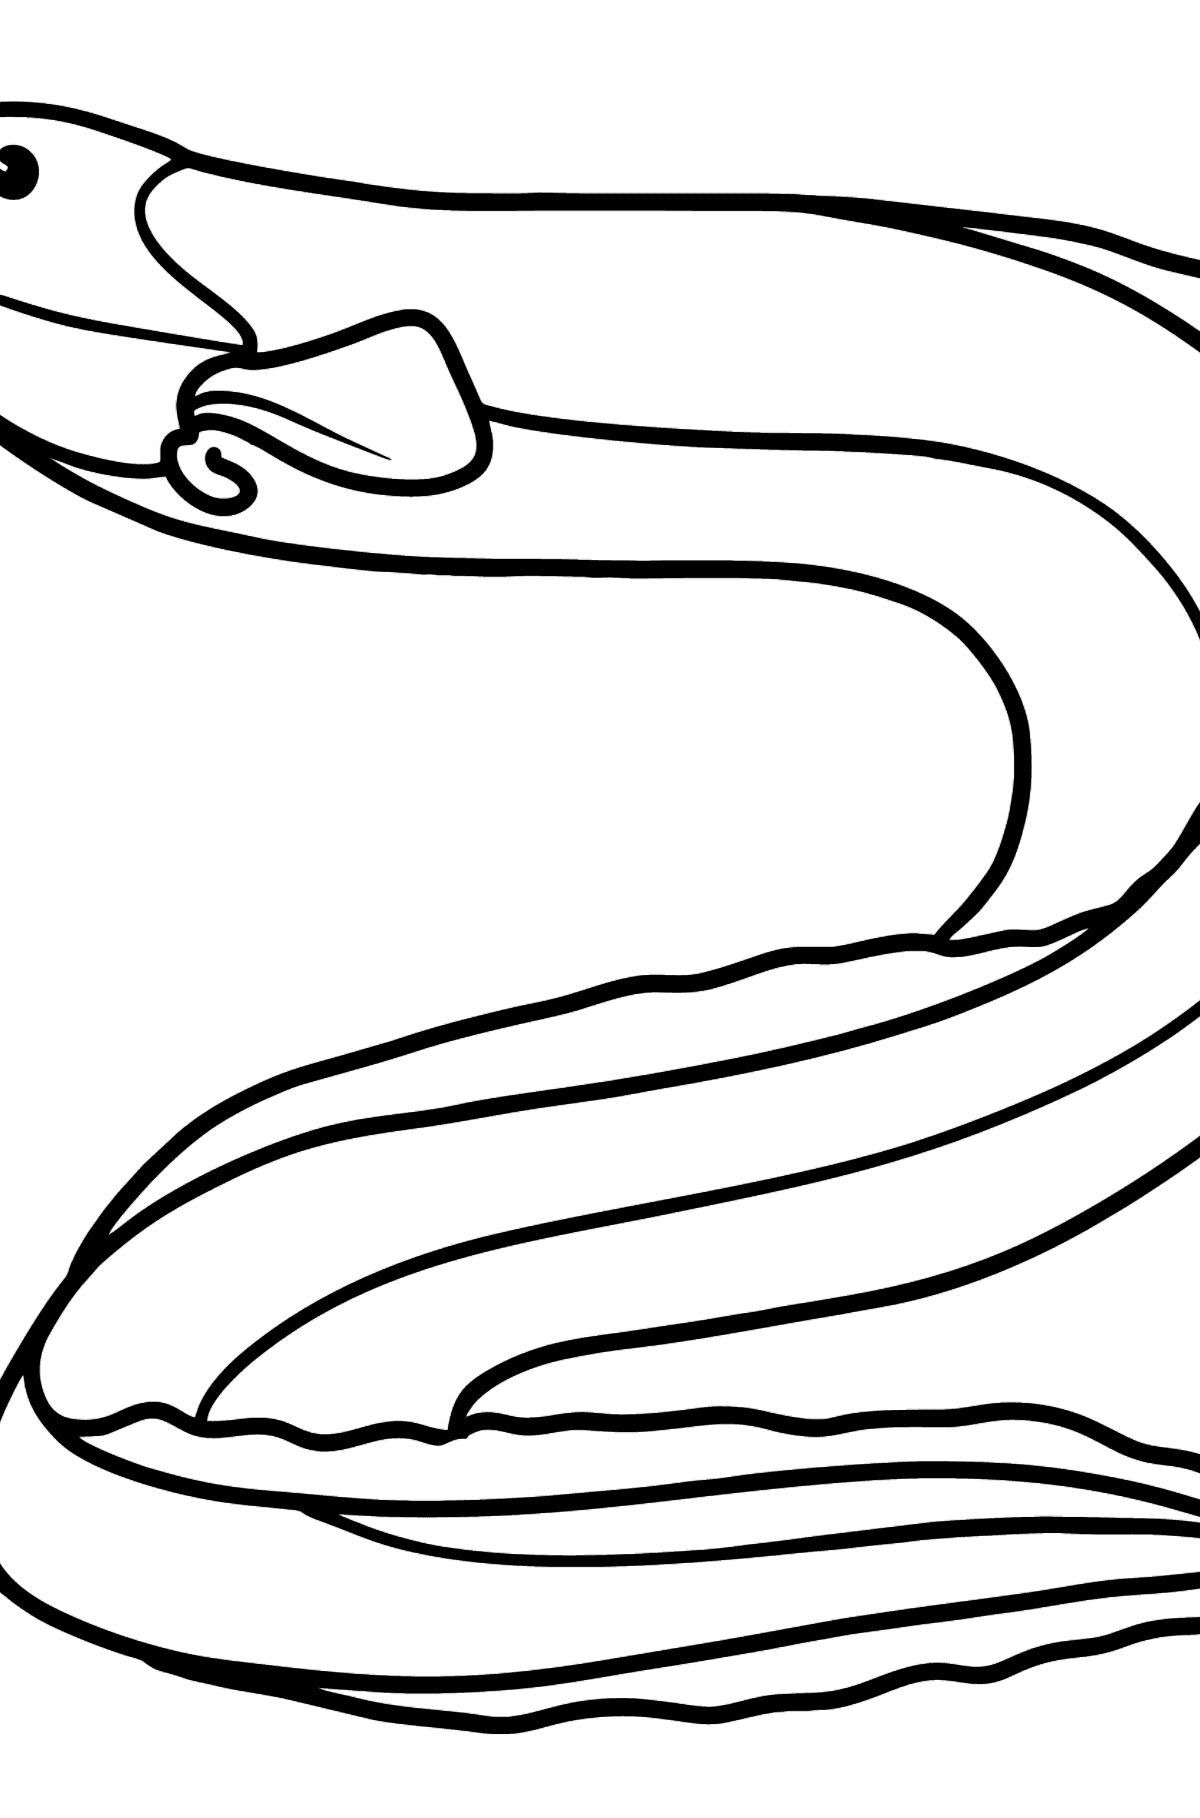 Boyama sayfası yılanbalığı - Boyamalar çocuklar için